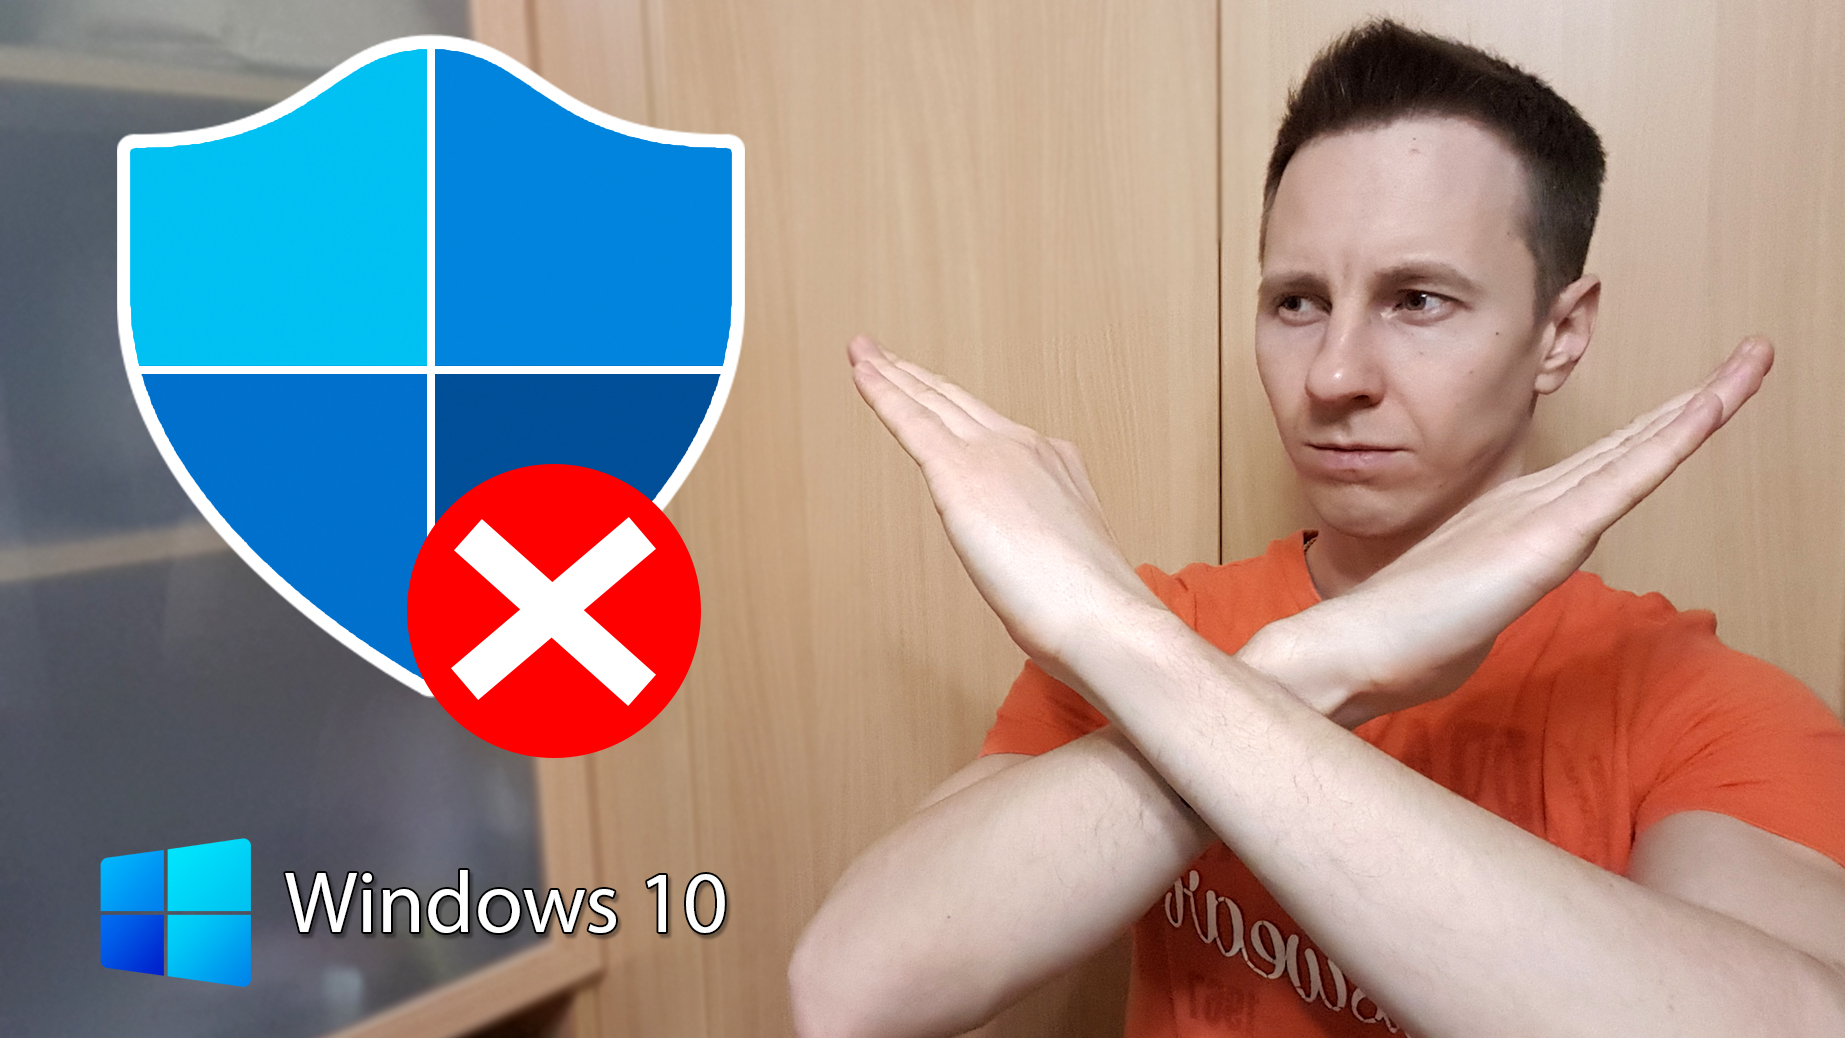 Автор статьи Владимир Белев, рядом иконка защитника Windows 10 и логотип операционной системы.